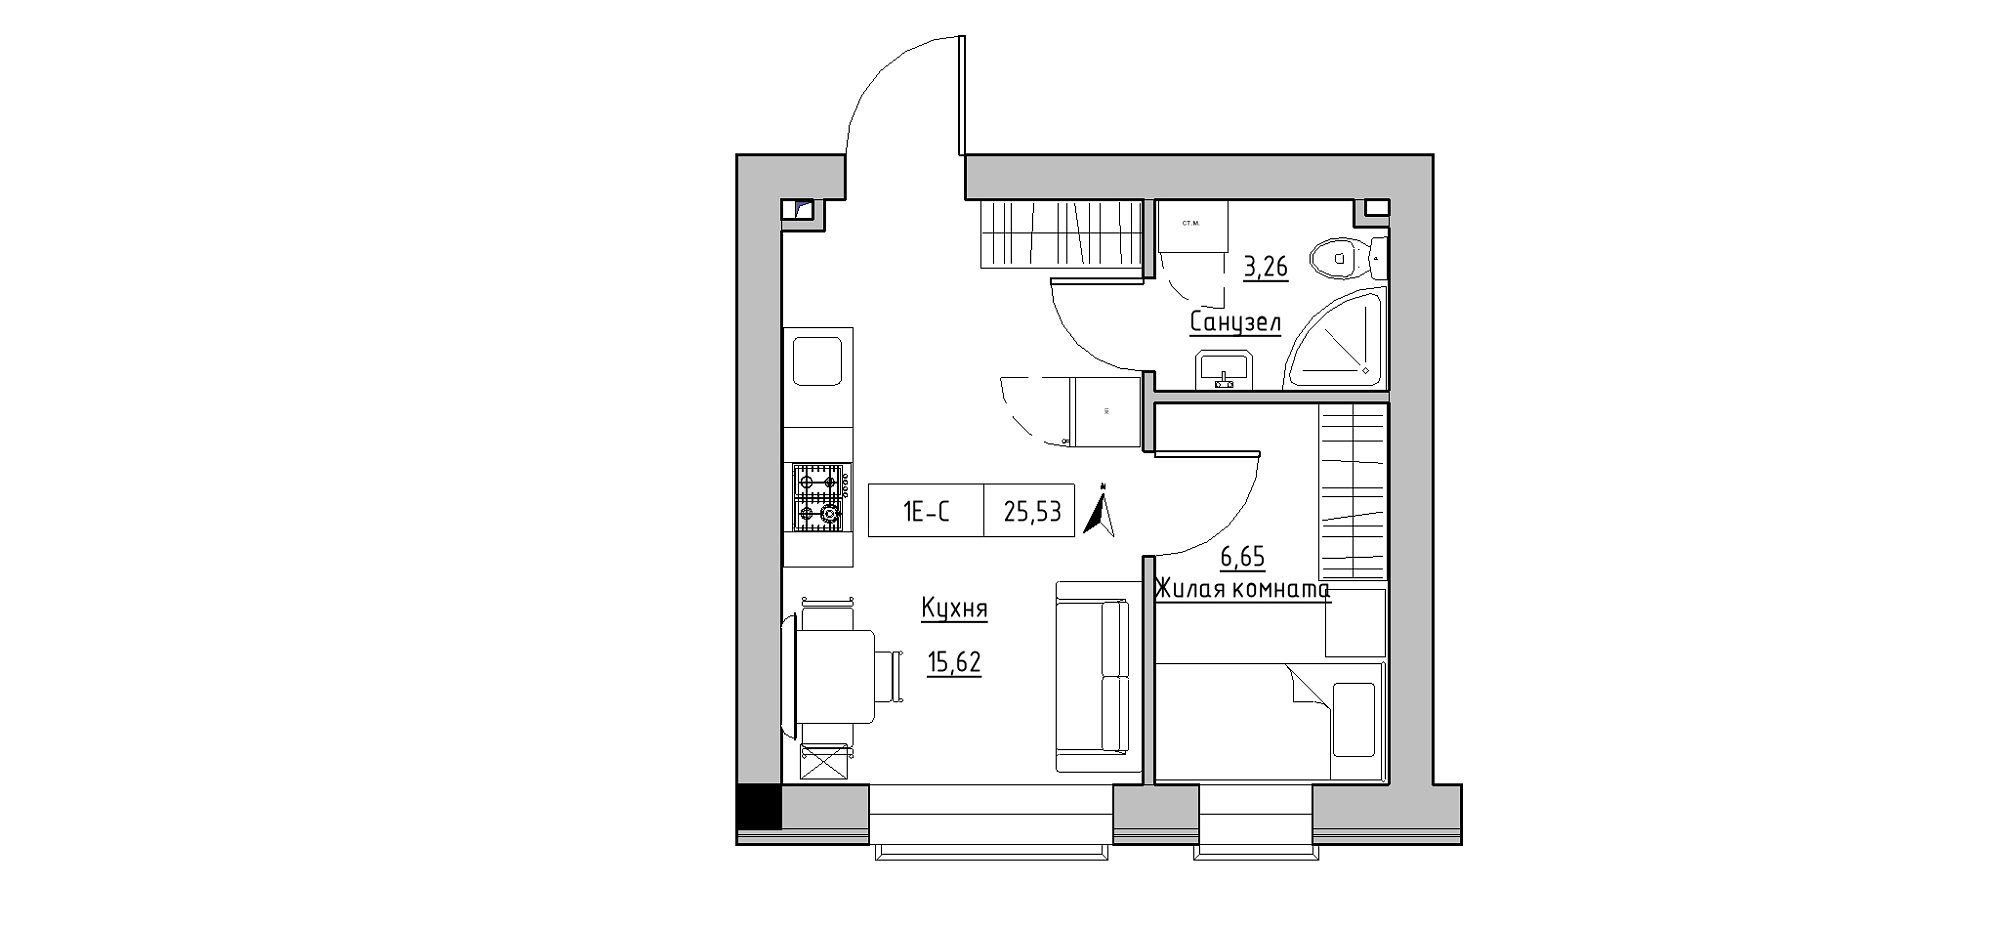 Планування 1-к квартира площею 25.53м2, KS-020-05/0004.